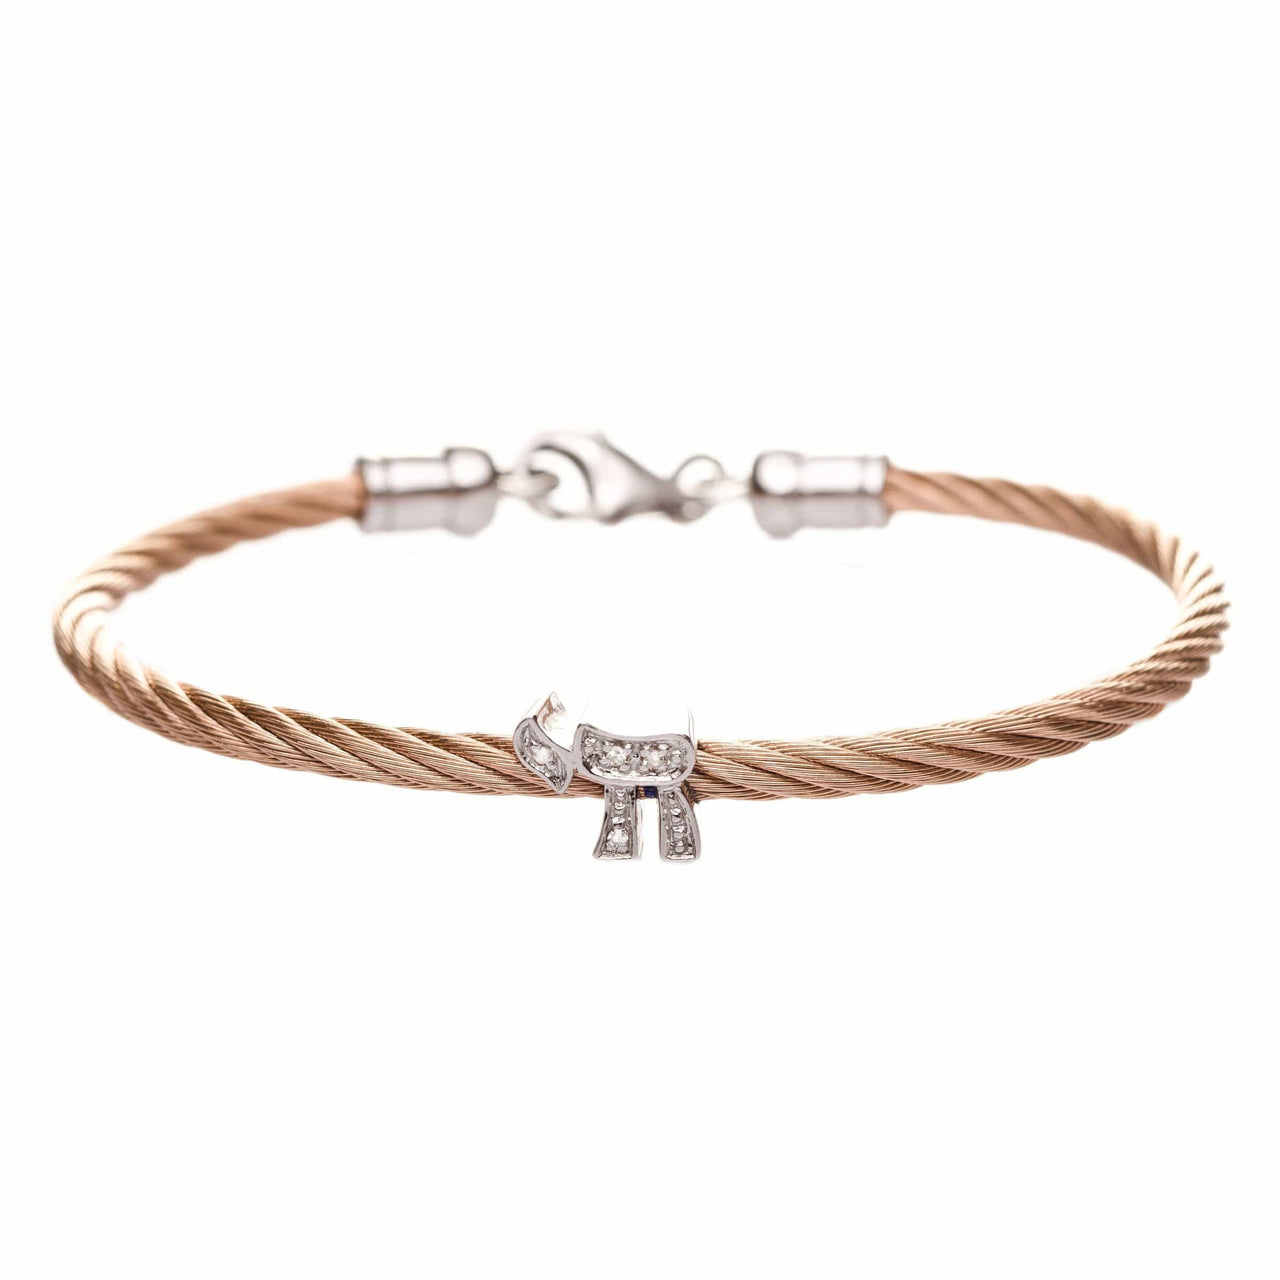 Alef Bet Bracelets Rose Gold Chai Diamond Stacking Cable Bracelets - Rose Gold, Gold, Silver or Black